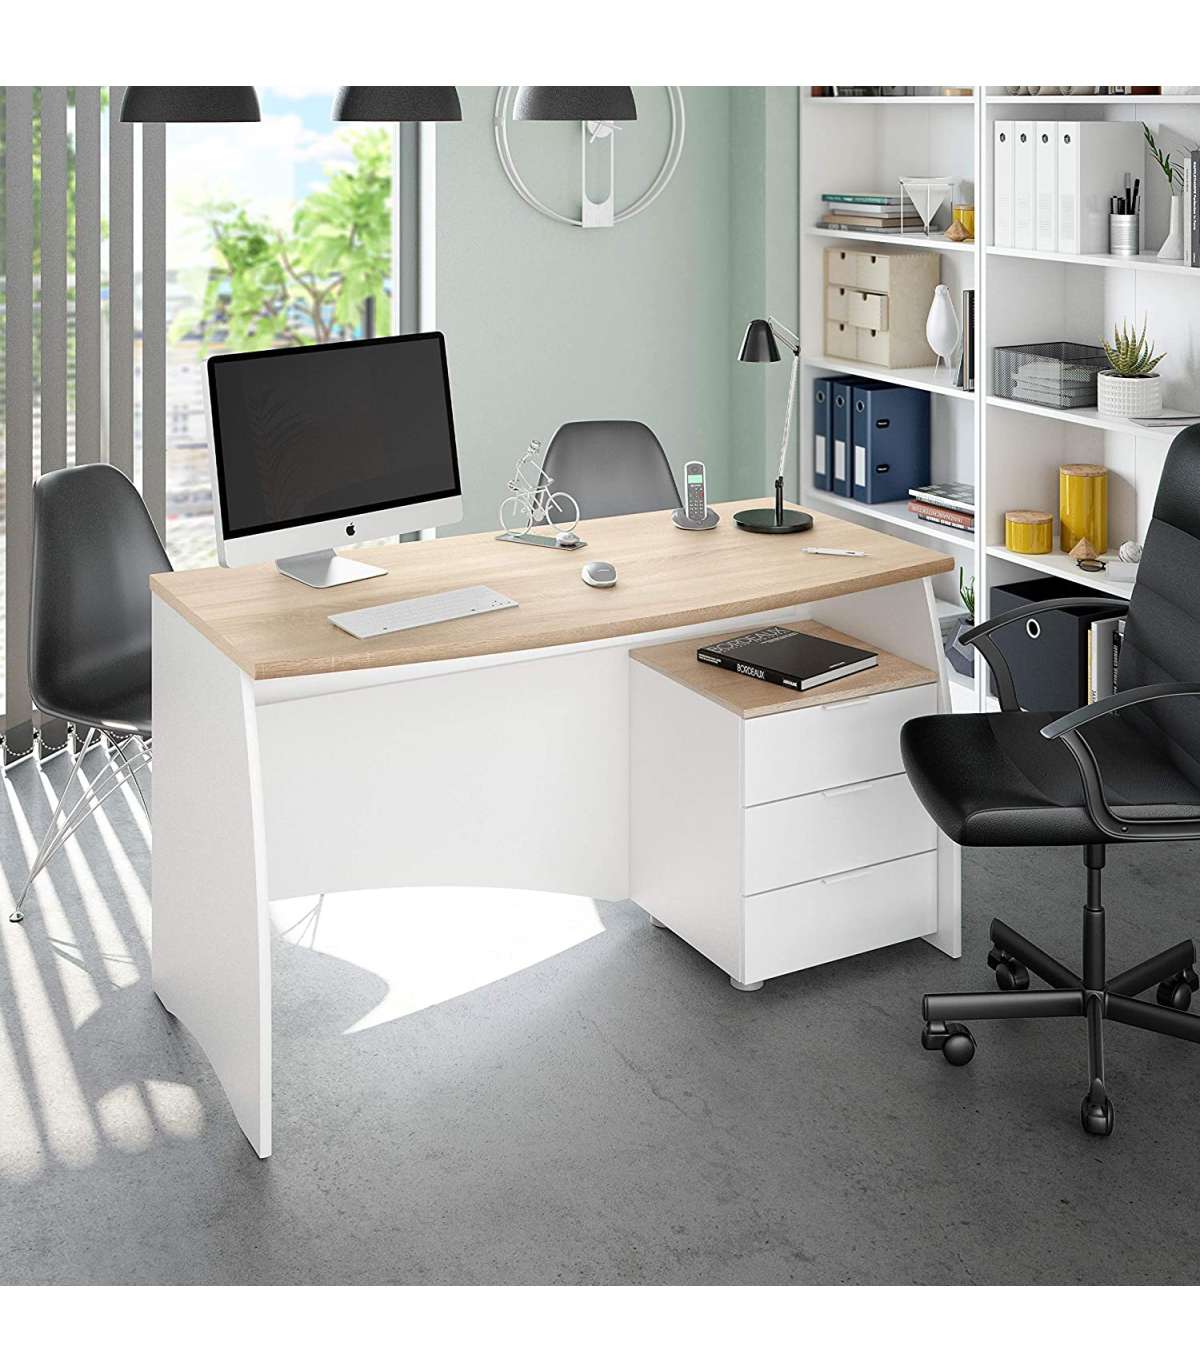 Mesa escritorio con cajón acabado en Roble y Blanco Artik 77 cm